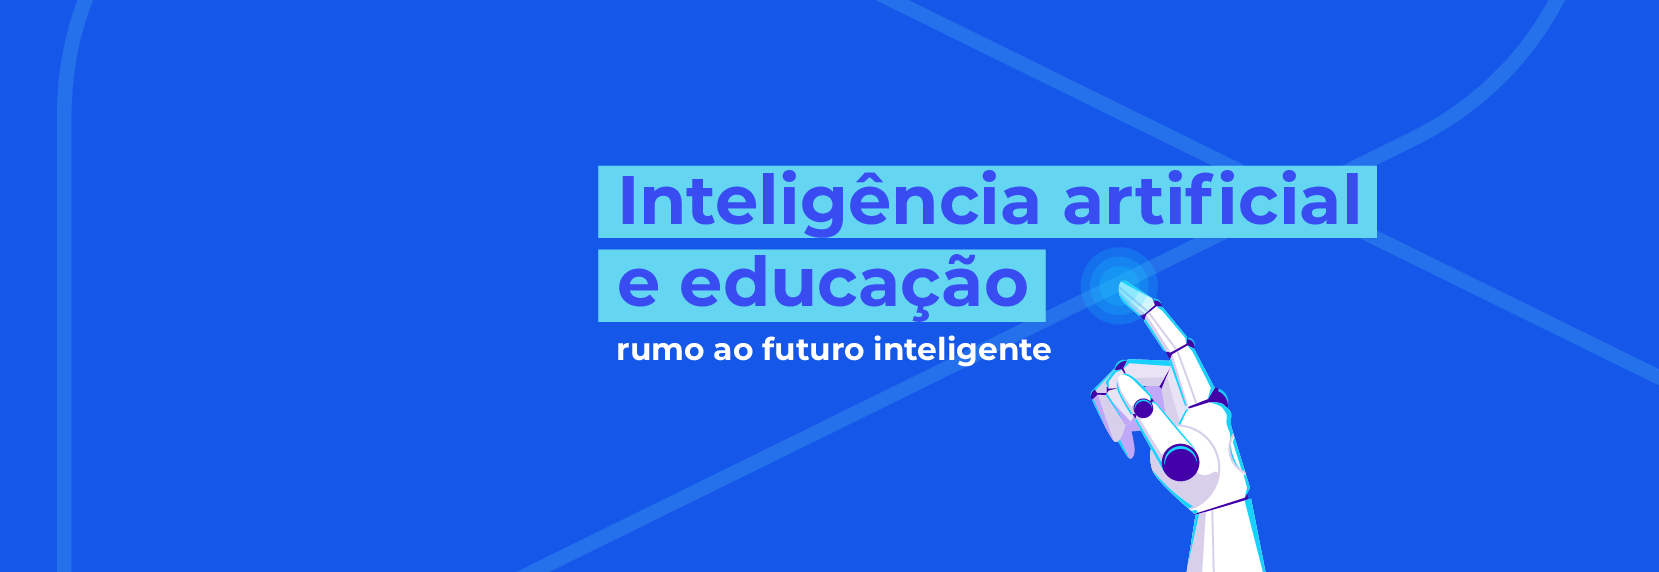 IA e educação: rumo ao futuro inteligente